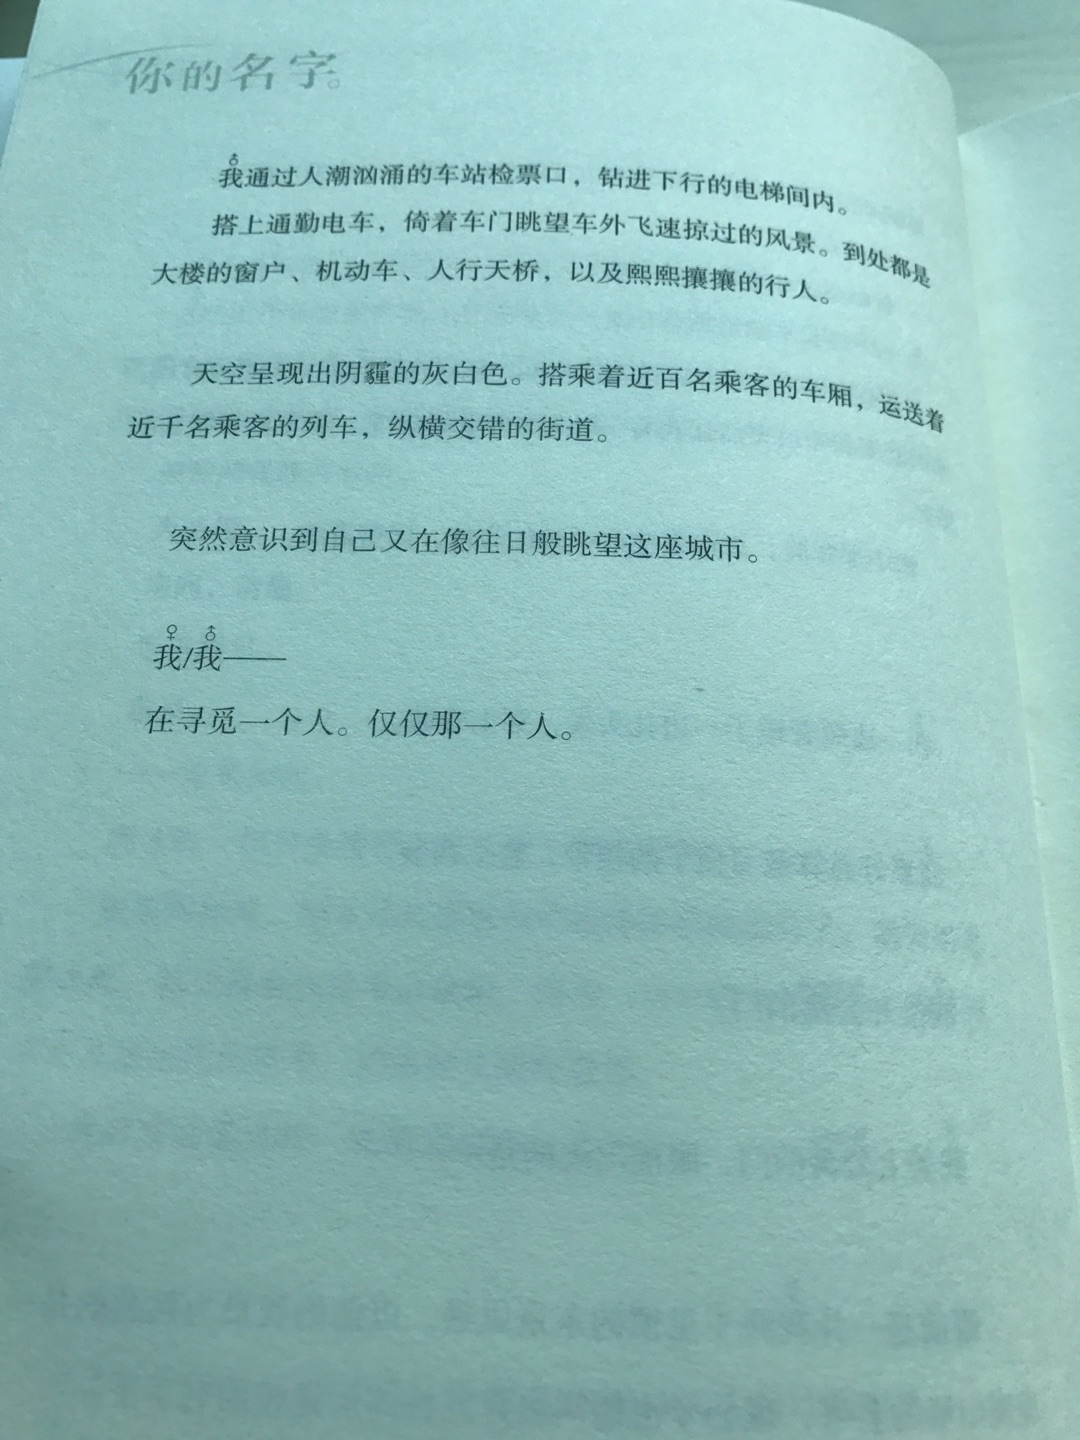 买中文送英文，非常棒！很好的书！我很喜欢！一本满足！